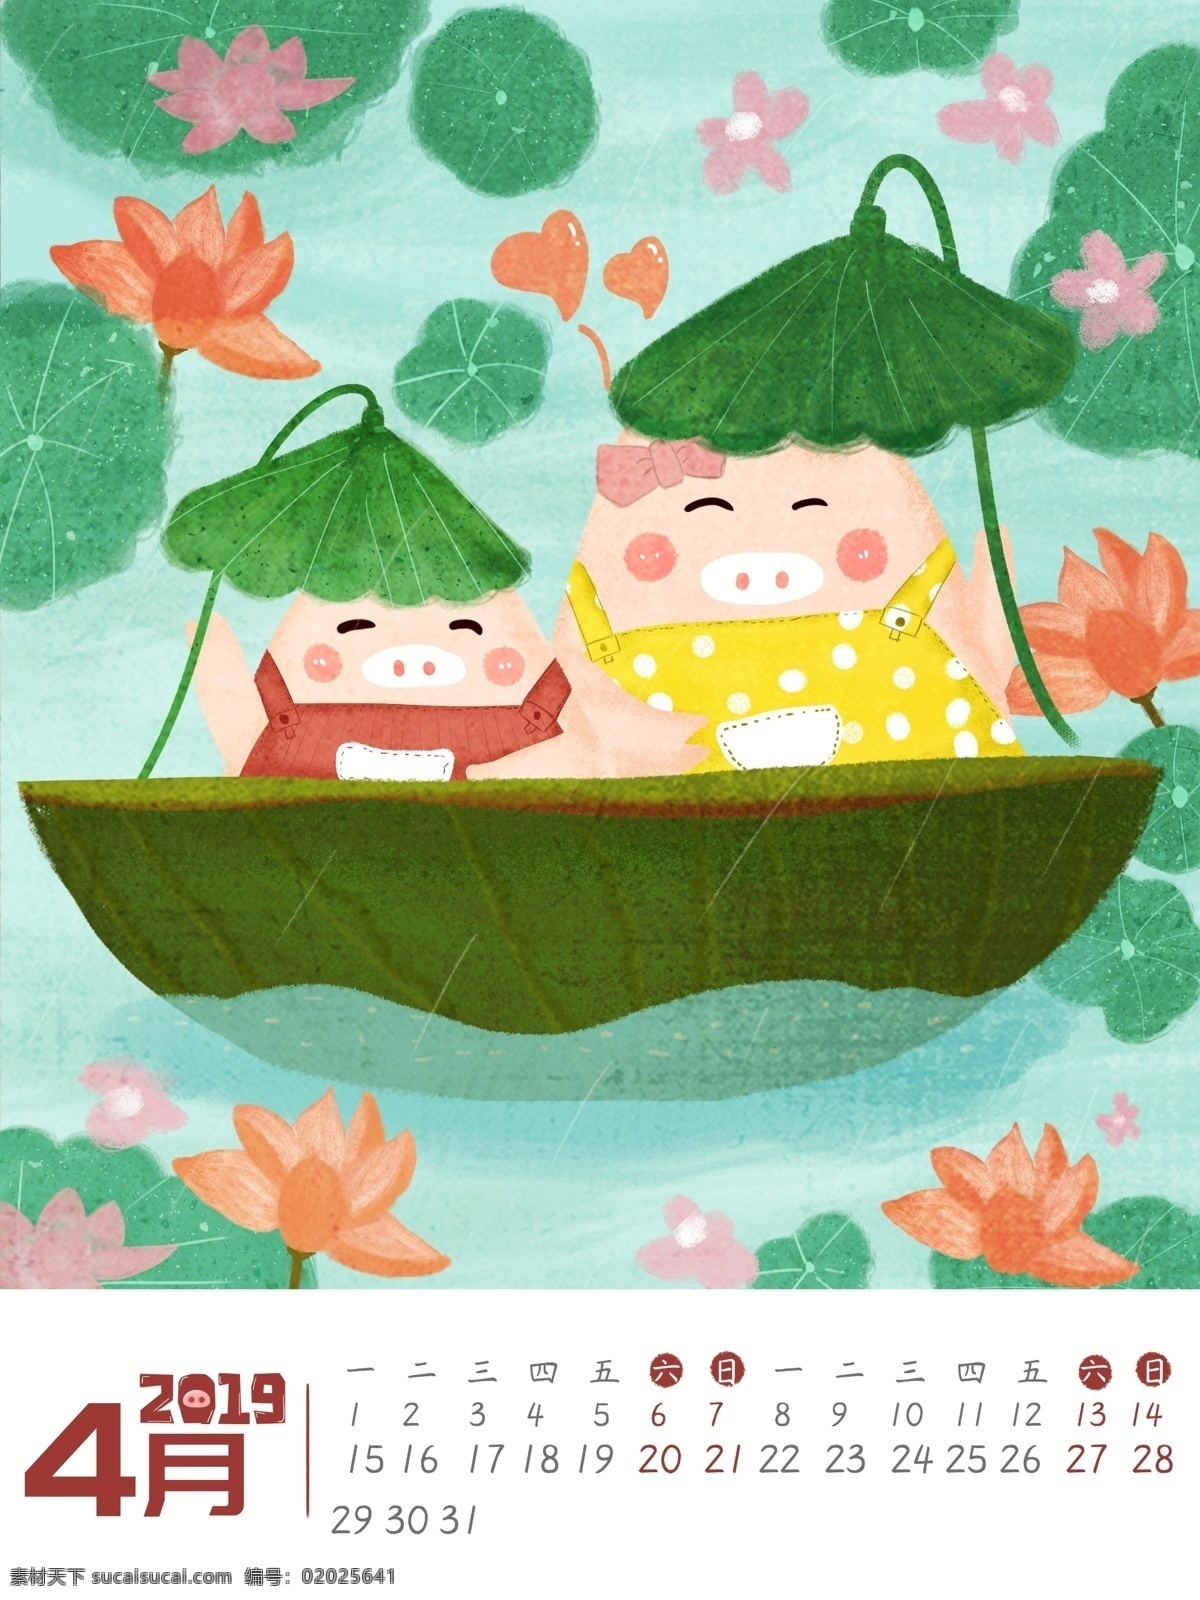 2019 年 日历 插画 系列 月份 小 猪 手绘 4月份 小猪